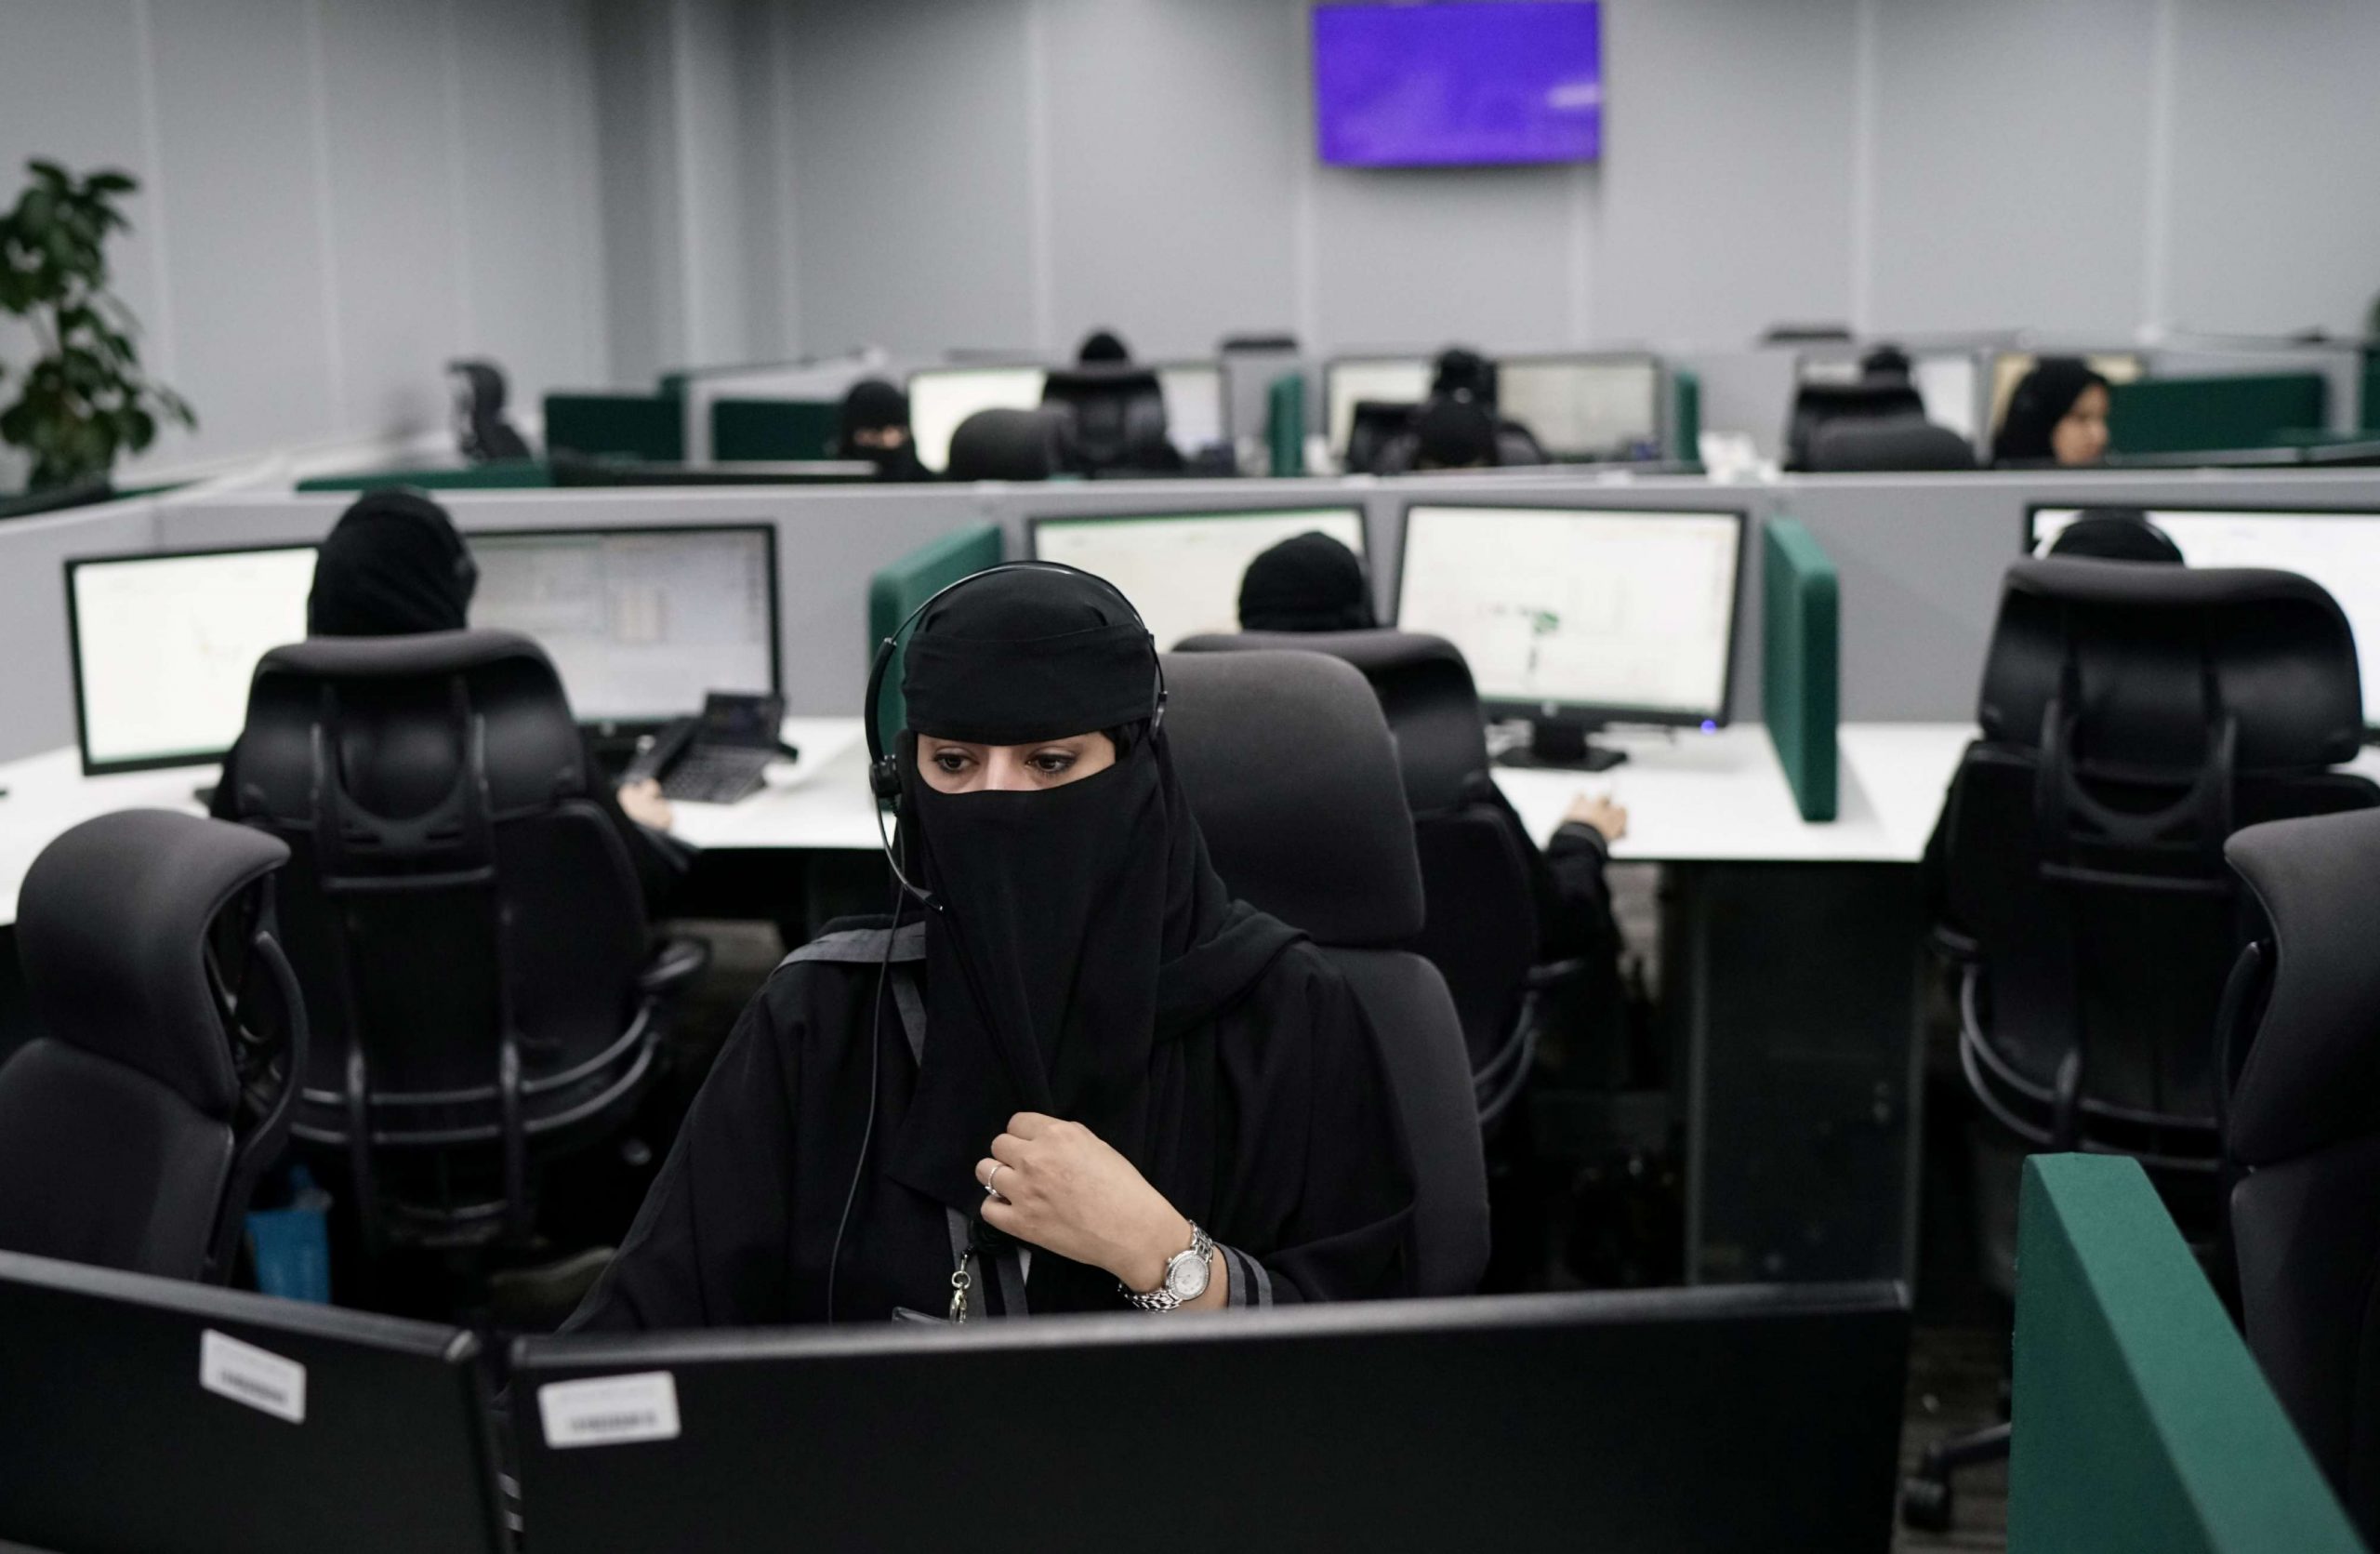 السعودية: انخفاض طفيف على معدل البطالة في الربع الأخير 2021